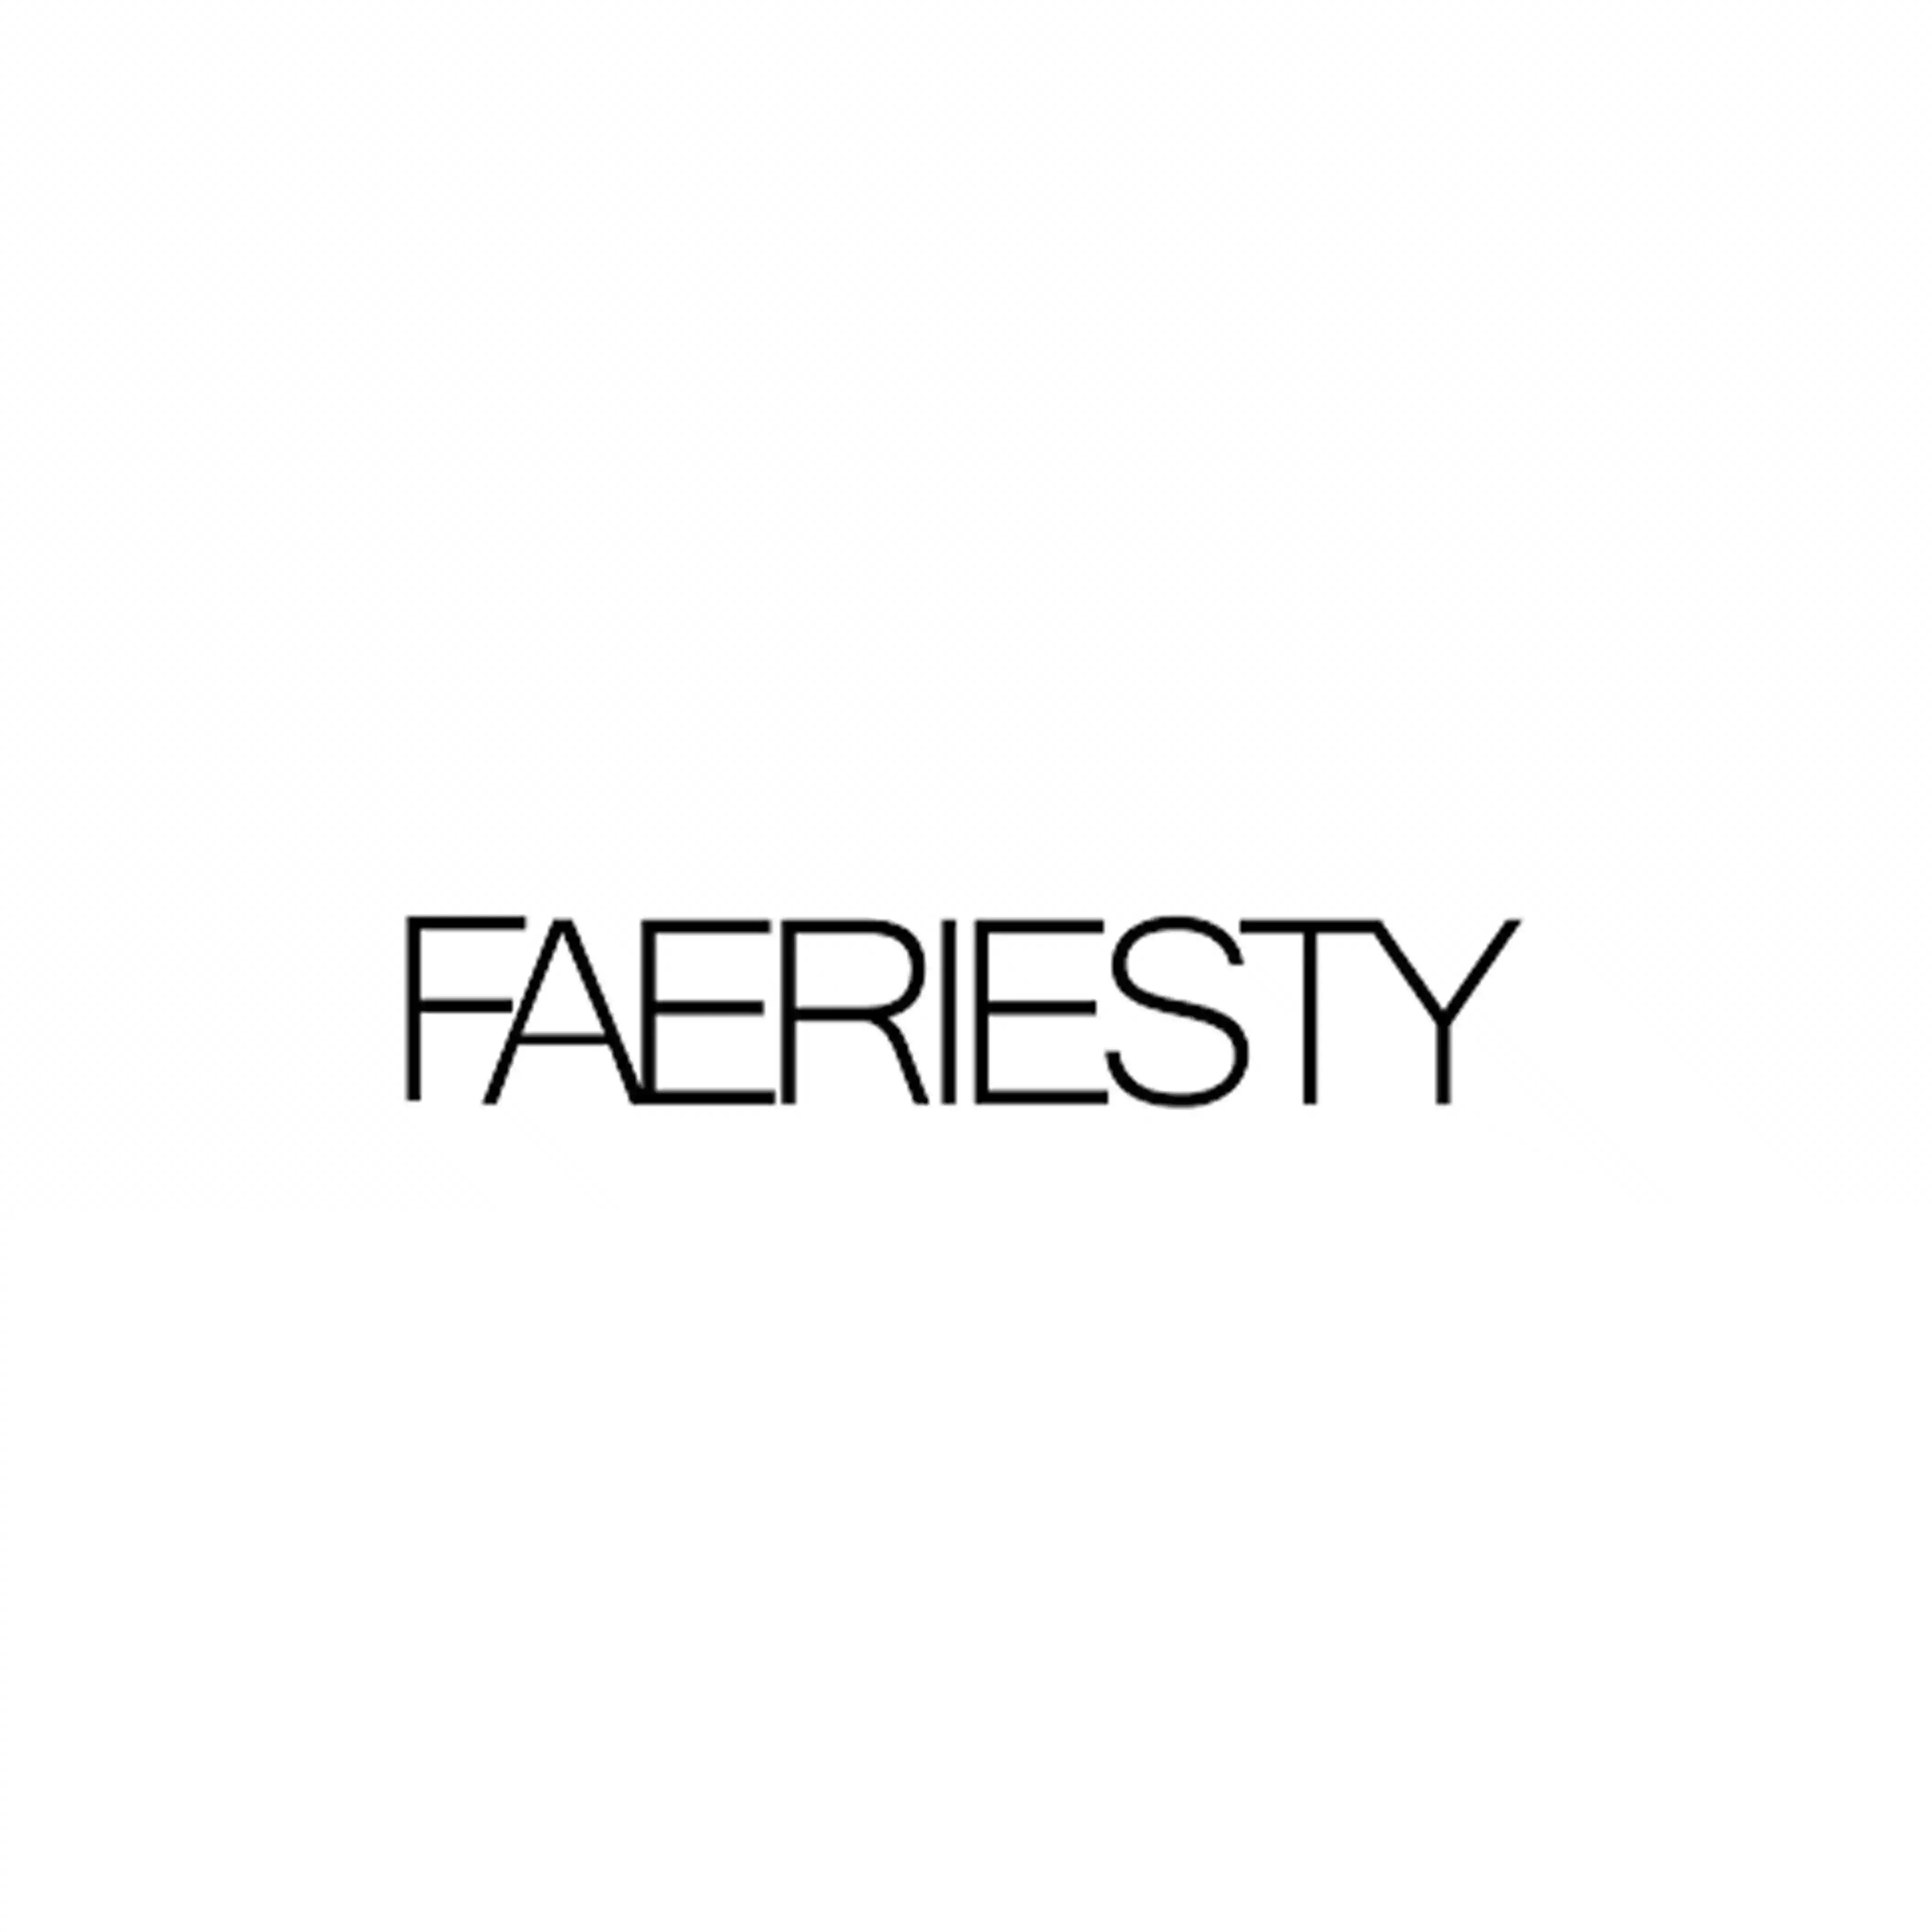 Faeriesty logo